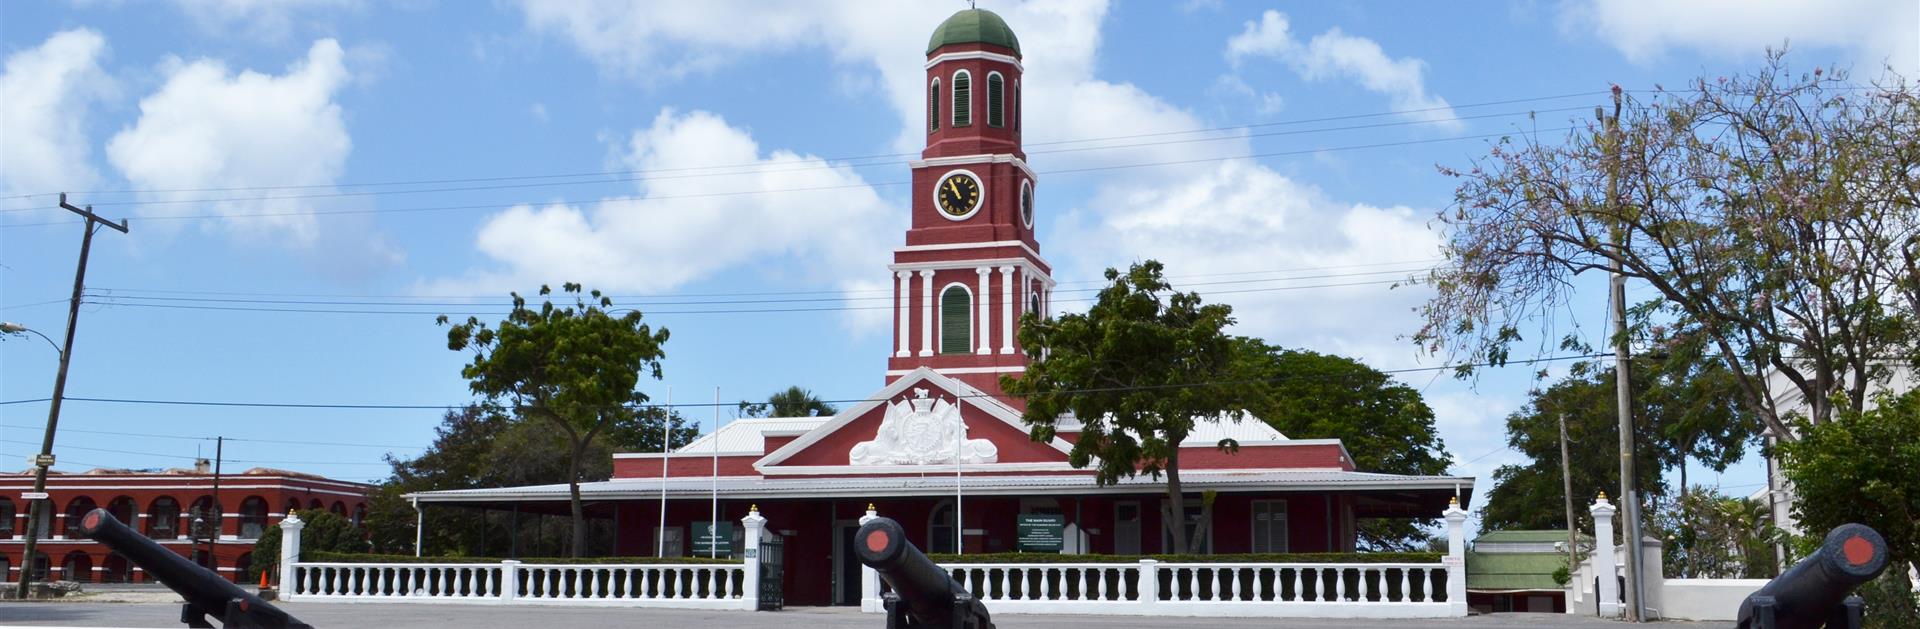 Visit Barbados - 🇧🇧 “Historic Bridgetown Barbados: Worth